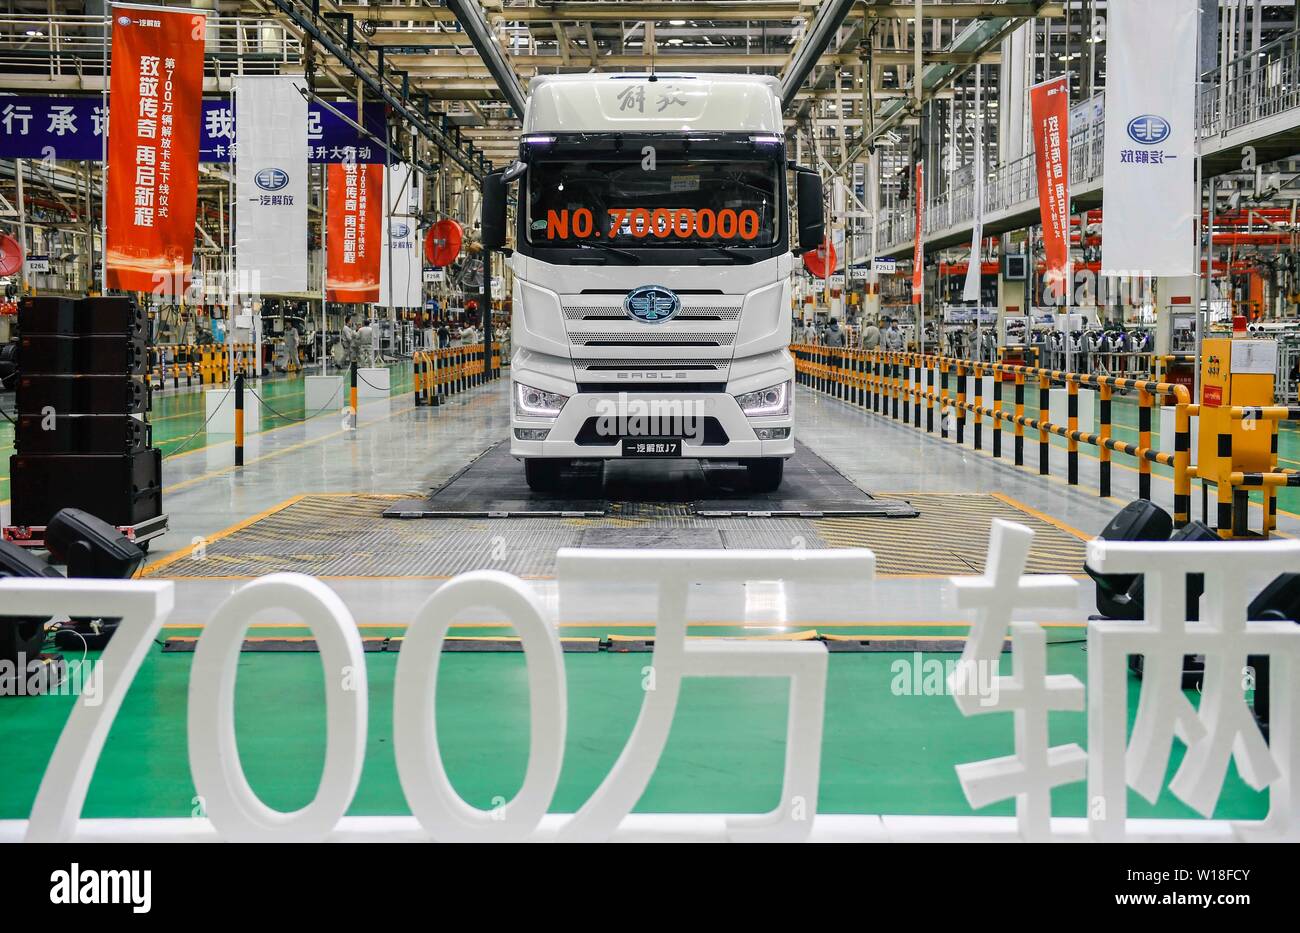 (190701) - Peking, 1. Juli 2019 (Xinhua) - die 7-millionste FAW Jiefang Lkw rollt vom Band auf der China FAW Group Co., Ltd. in Changchun, Hauptstadt der Provinz Jilin im Nordosten Chinas, an November 30, 2018. Über sechs Jahrzehnte her, China die erste Automobilhersteller im Nordosten der industriellen Stadt Changchun als Land begann, ihre Wirtschaft zu Rindfleisch, und enthüllte der Nation erste inländisch produzierten Pkw im Jahr 1958. Heute ist das Land mit der weltweit größten Automobil Hersteller und Verkäufer in den letzten zehn Jahren mit 28.08 Mio. verkauften Fahrzeugen letzte y Stockfoto